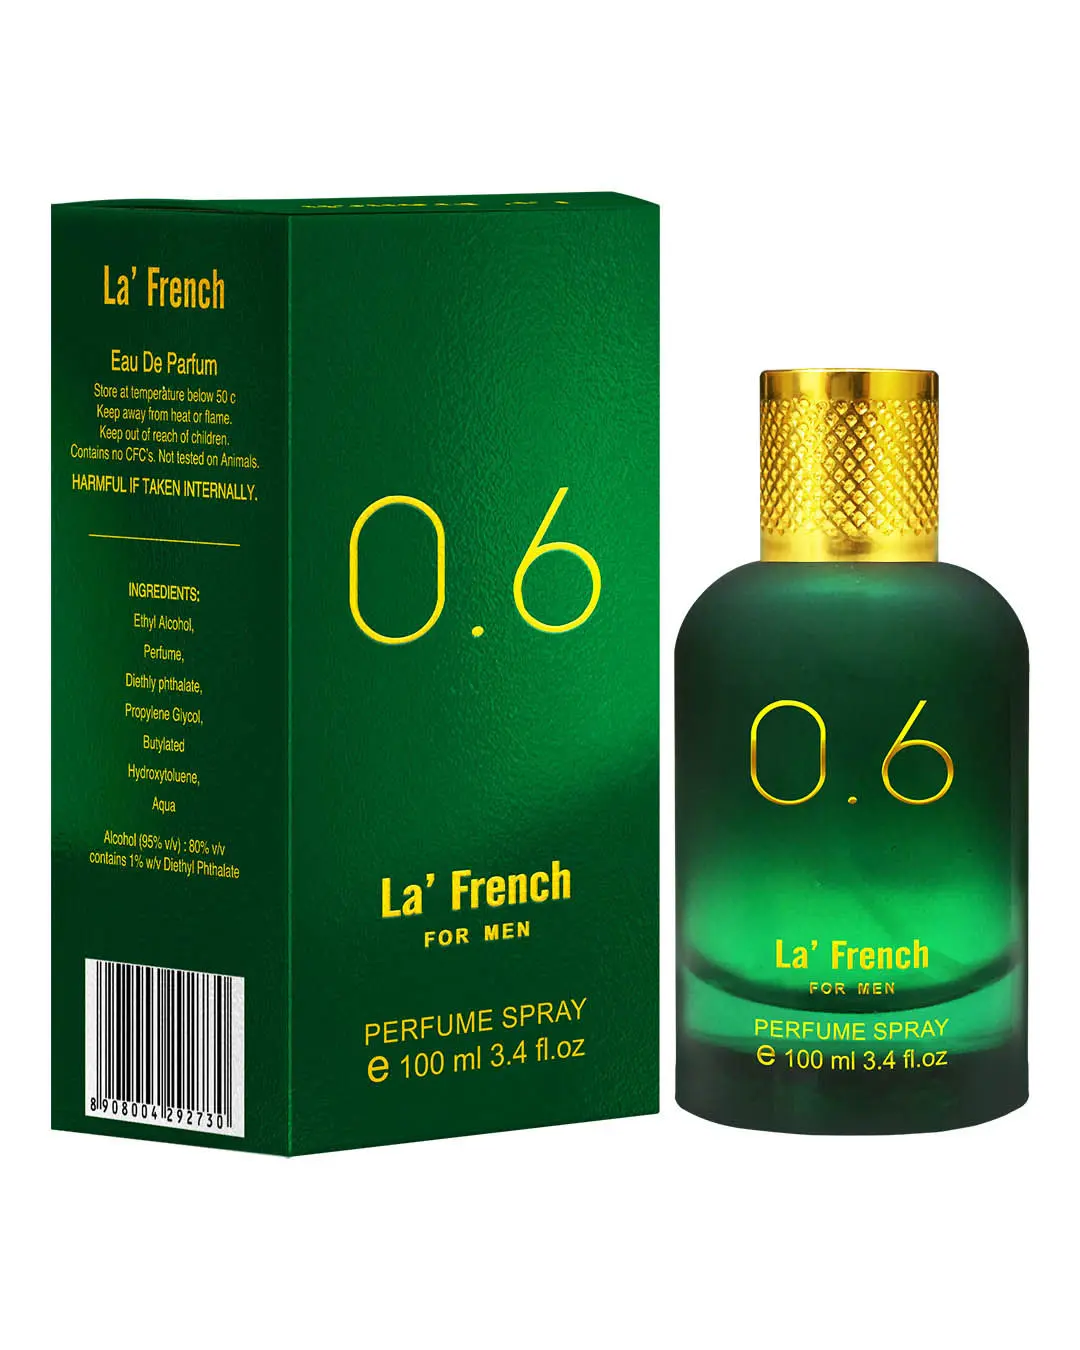 LA' French 0.6 Perfume By La' French, Eau De Parfum (100 ml) - Ideal For Men